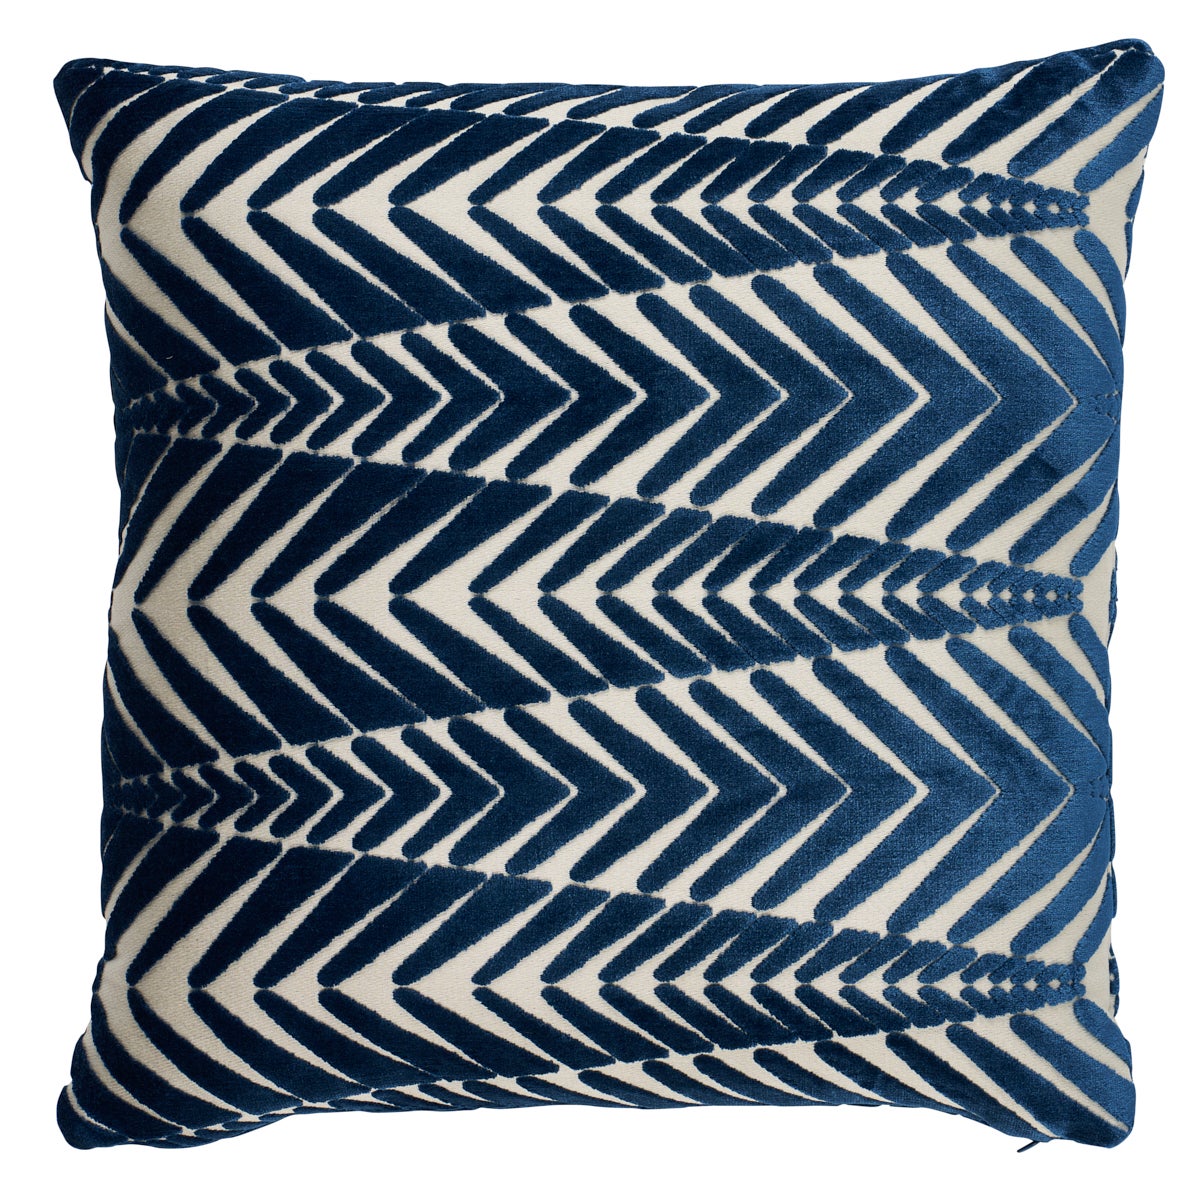 Zebra Velvet Pillow in Silver Blue, 20"